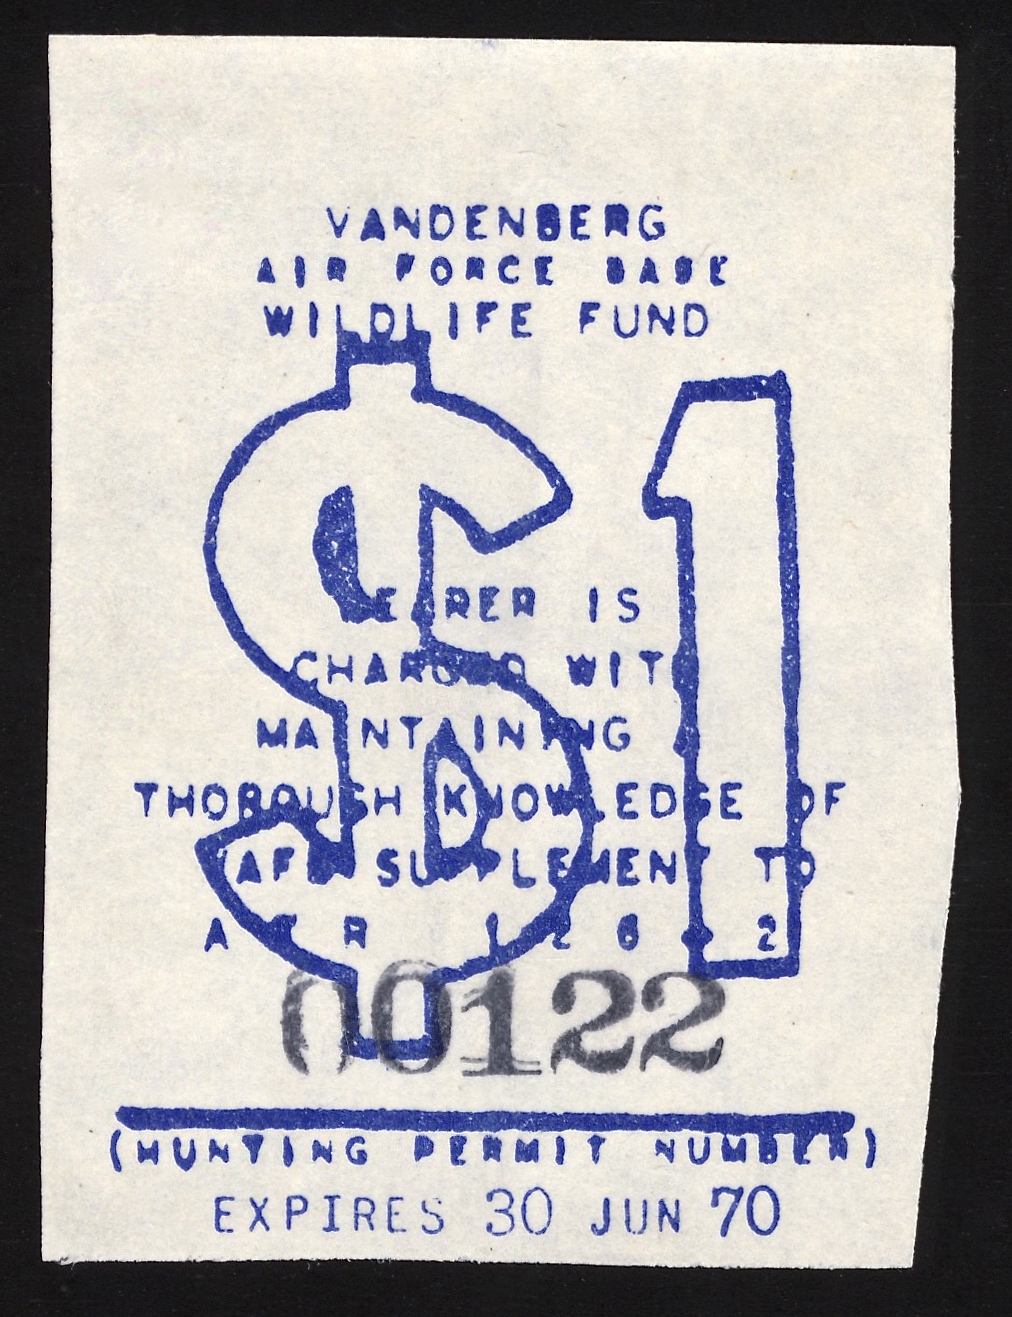 1969-70 VAFB Hunting